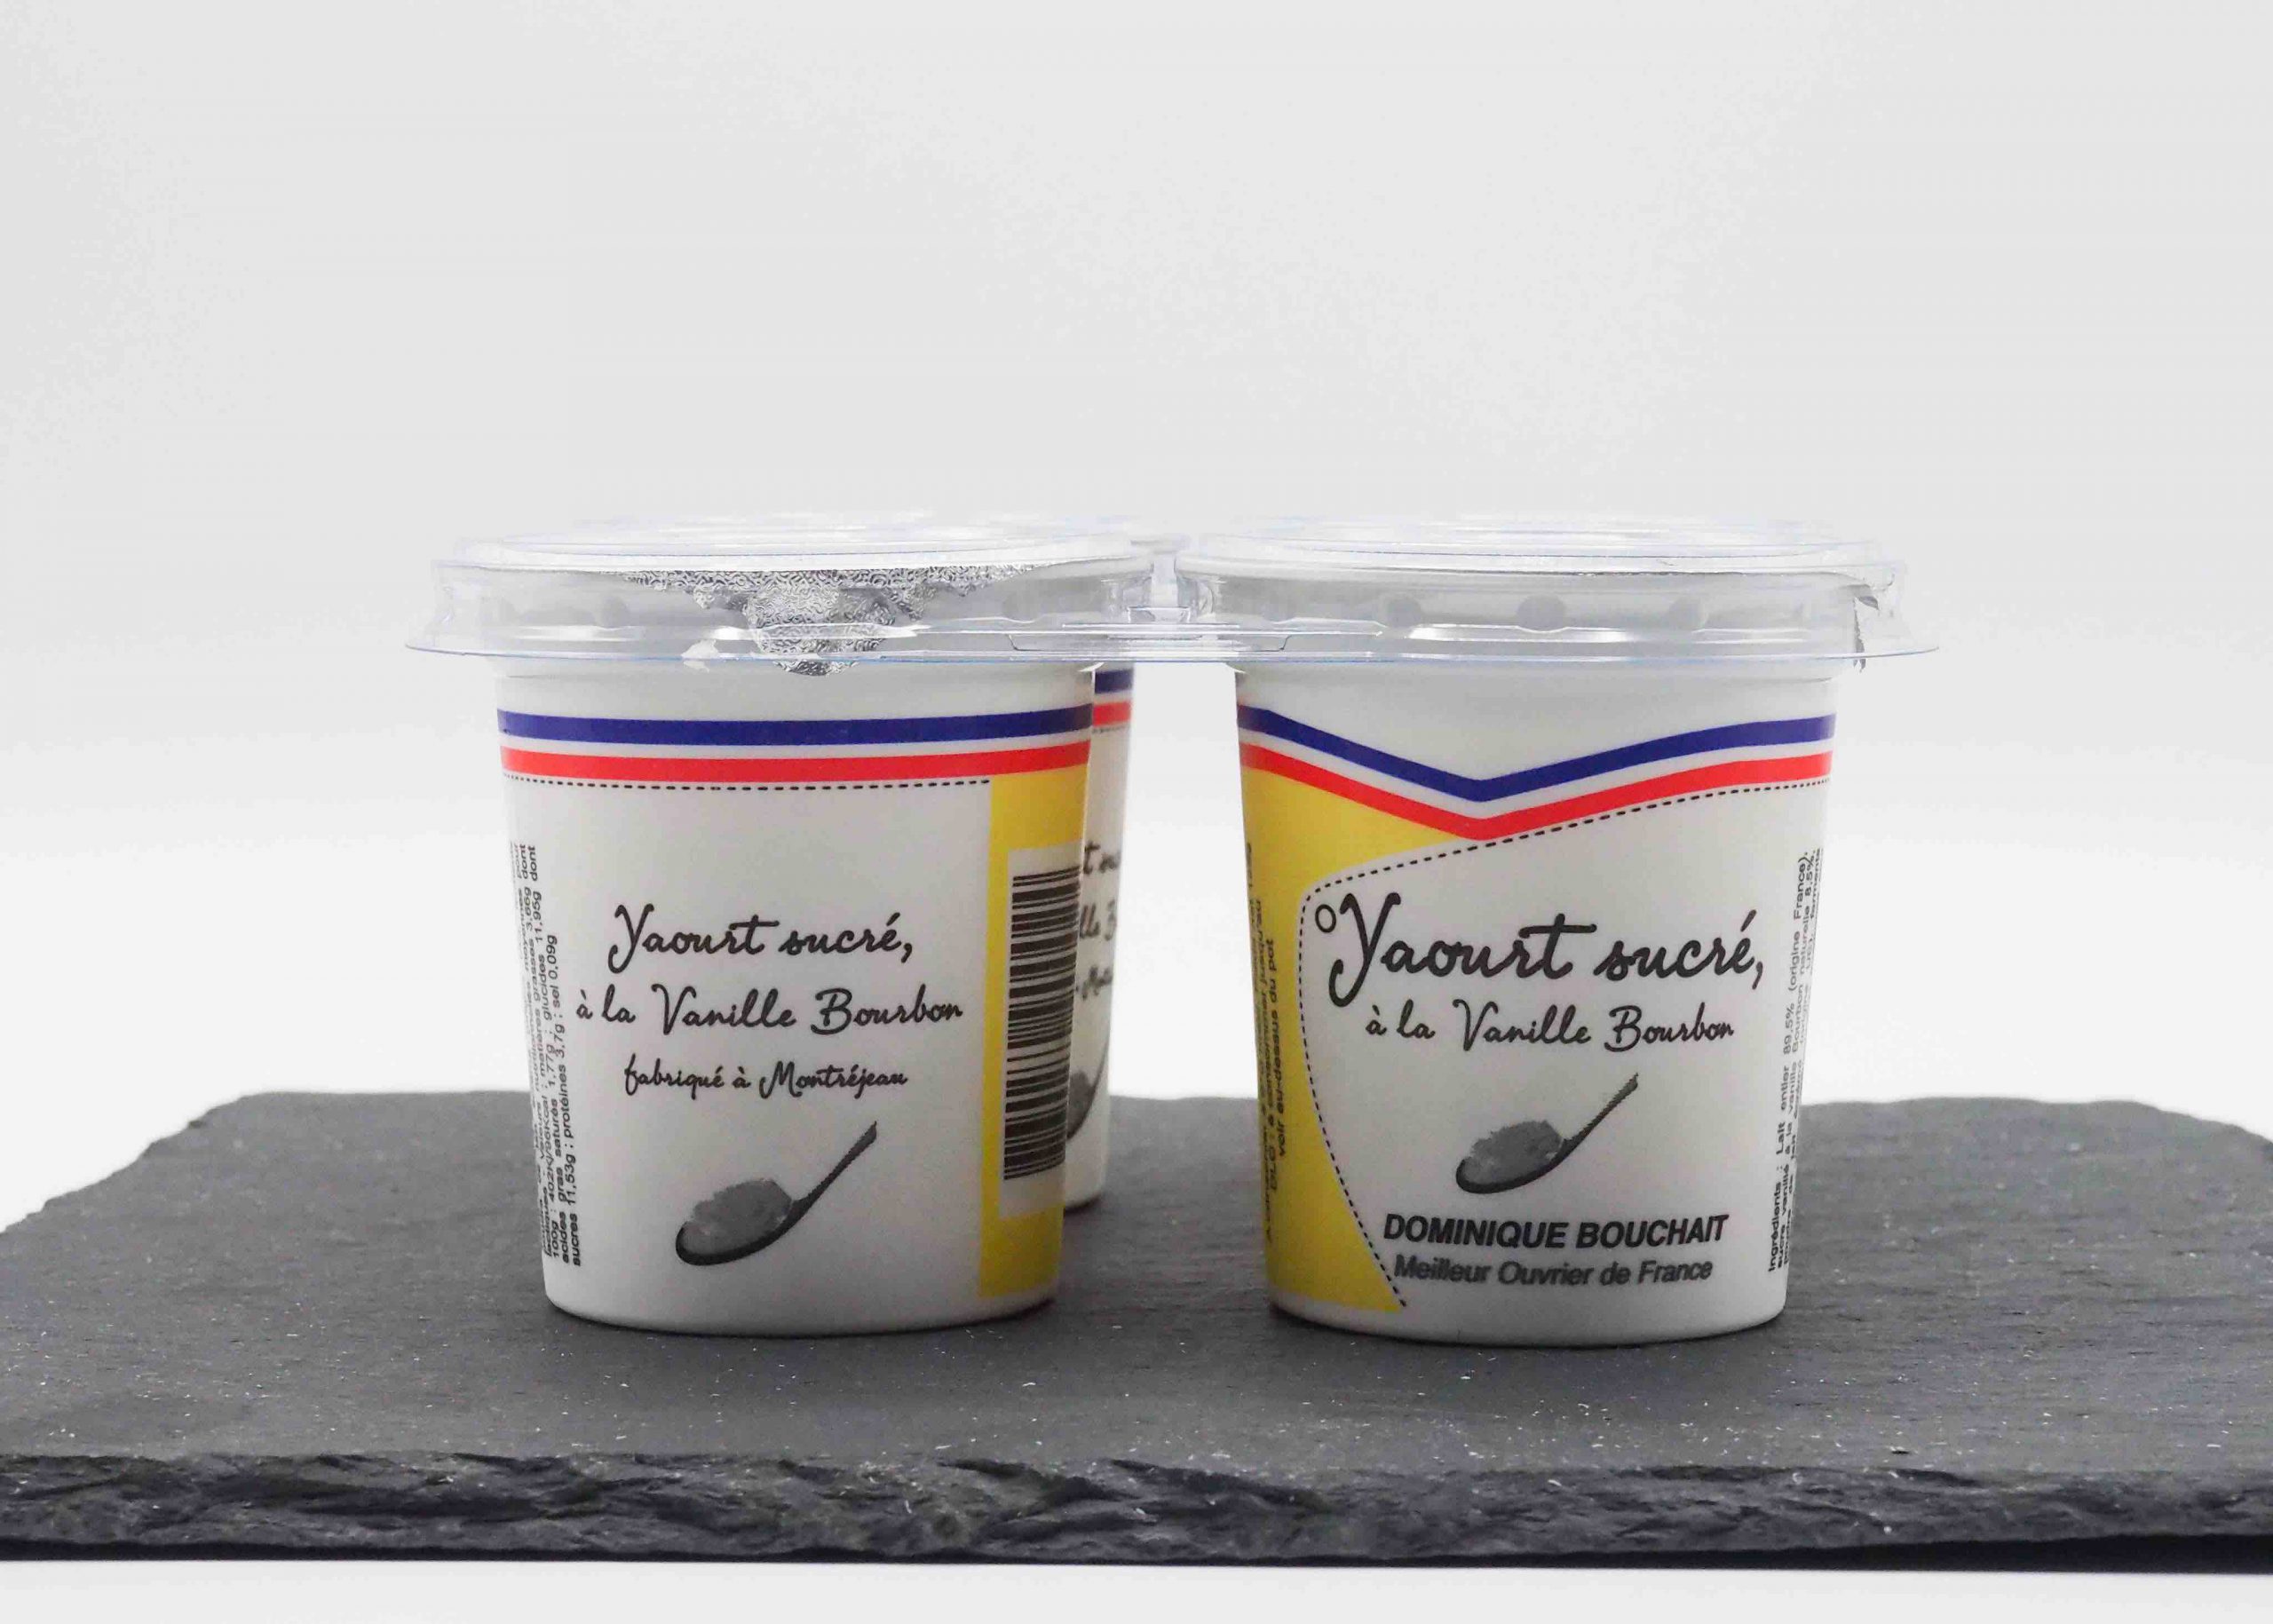 Achetez en ligne des yaourts vanille chez Fromage Napoléon. Vente en ligne.